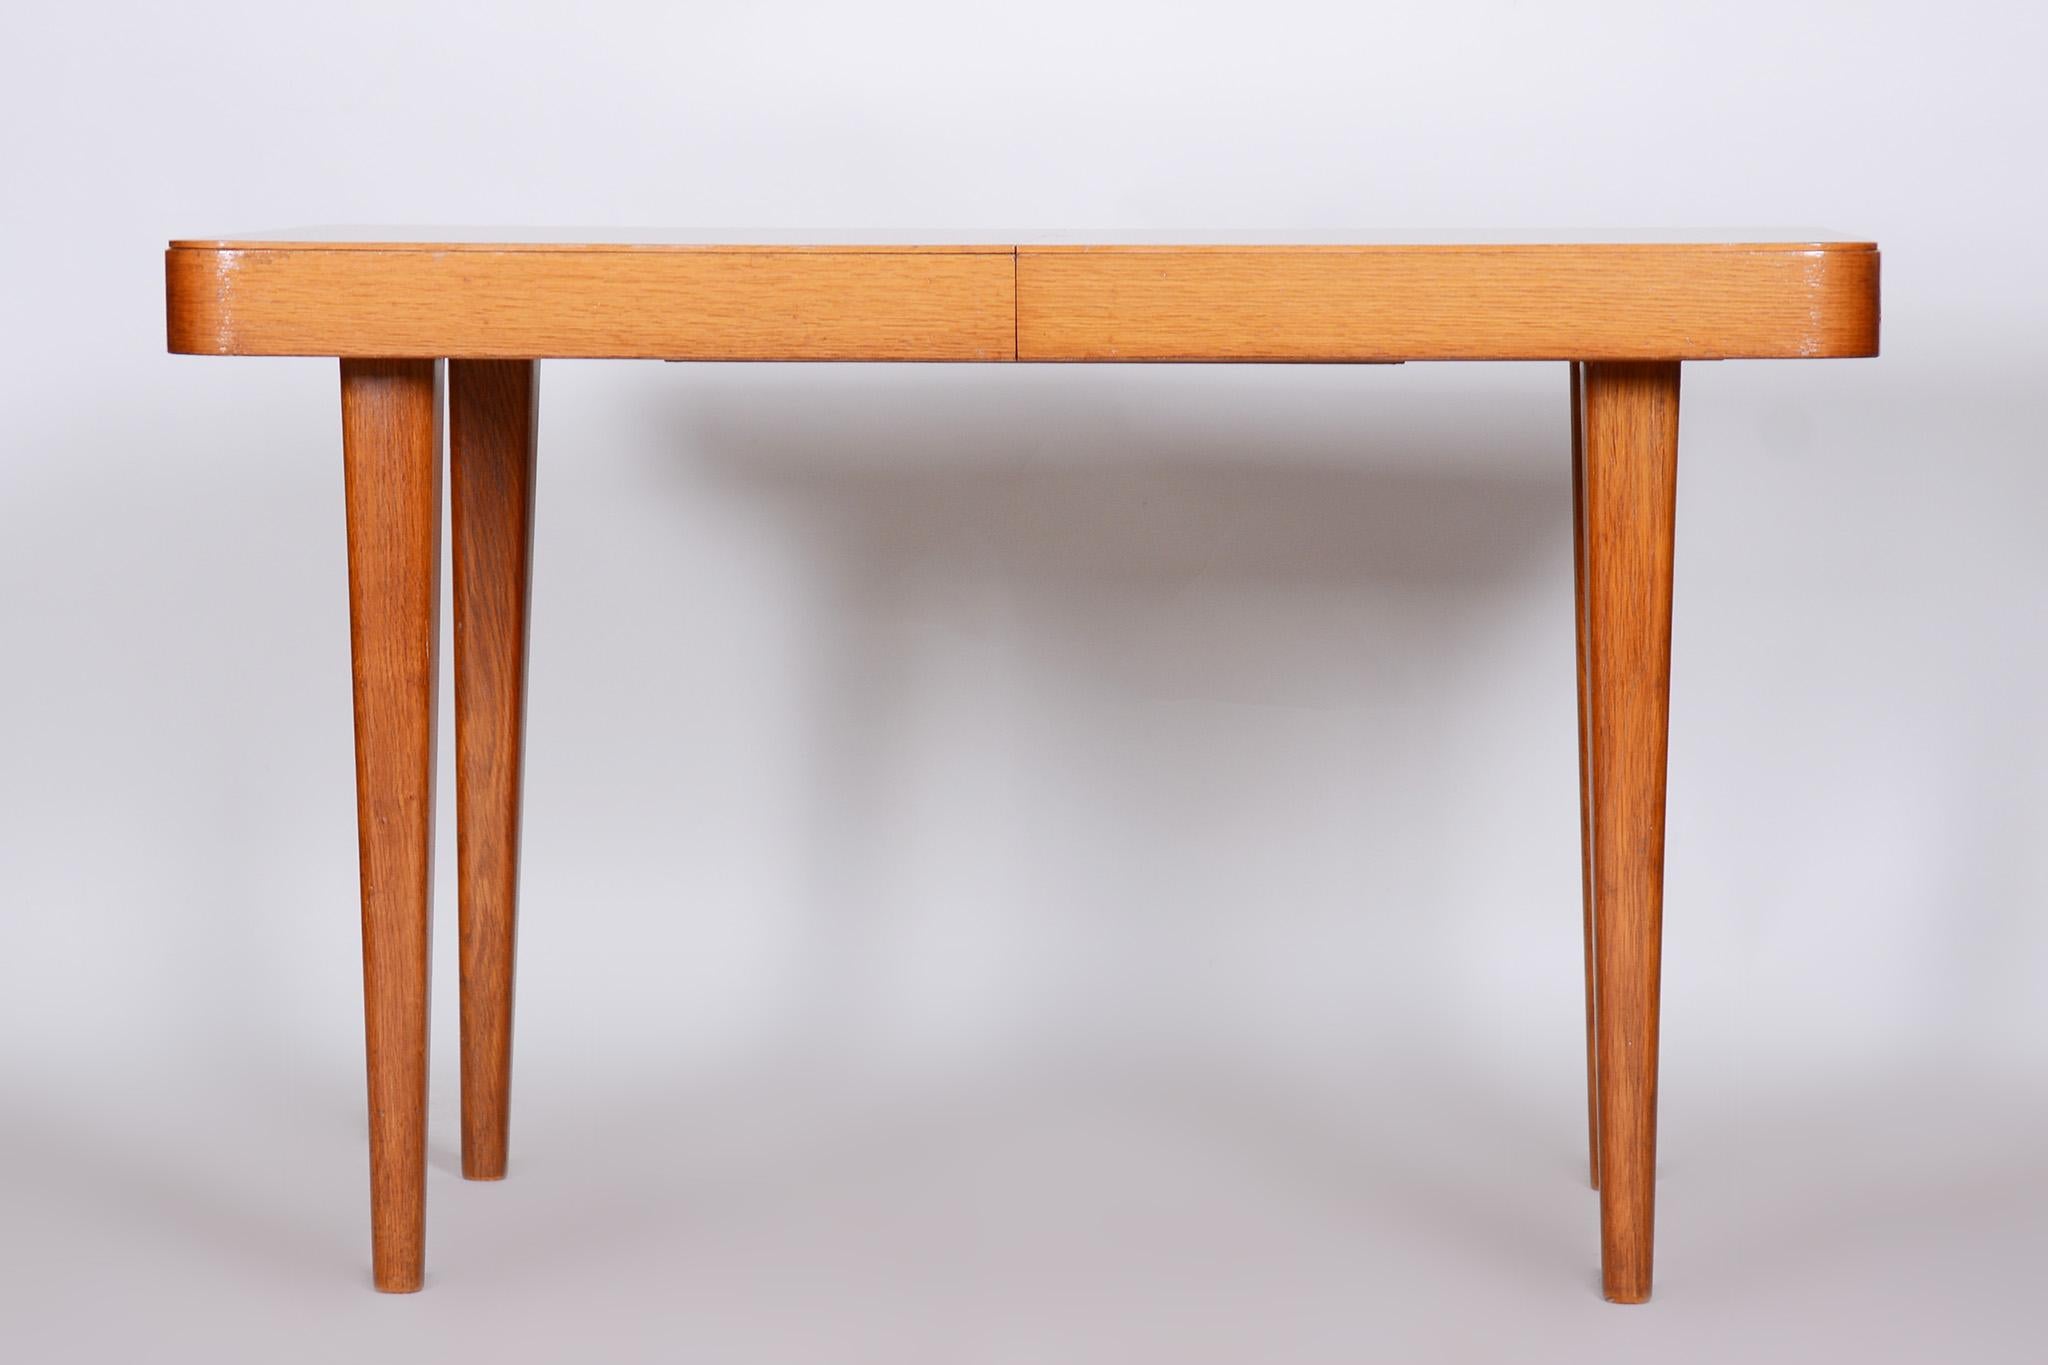 Vollständig restaurierter Art-Déco-Tisch.
Wiederbelebte Politur

Einstellbare Breite: 121 cm - 163 cm (47.6 in - 64.2 in).